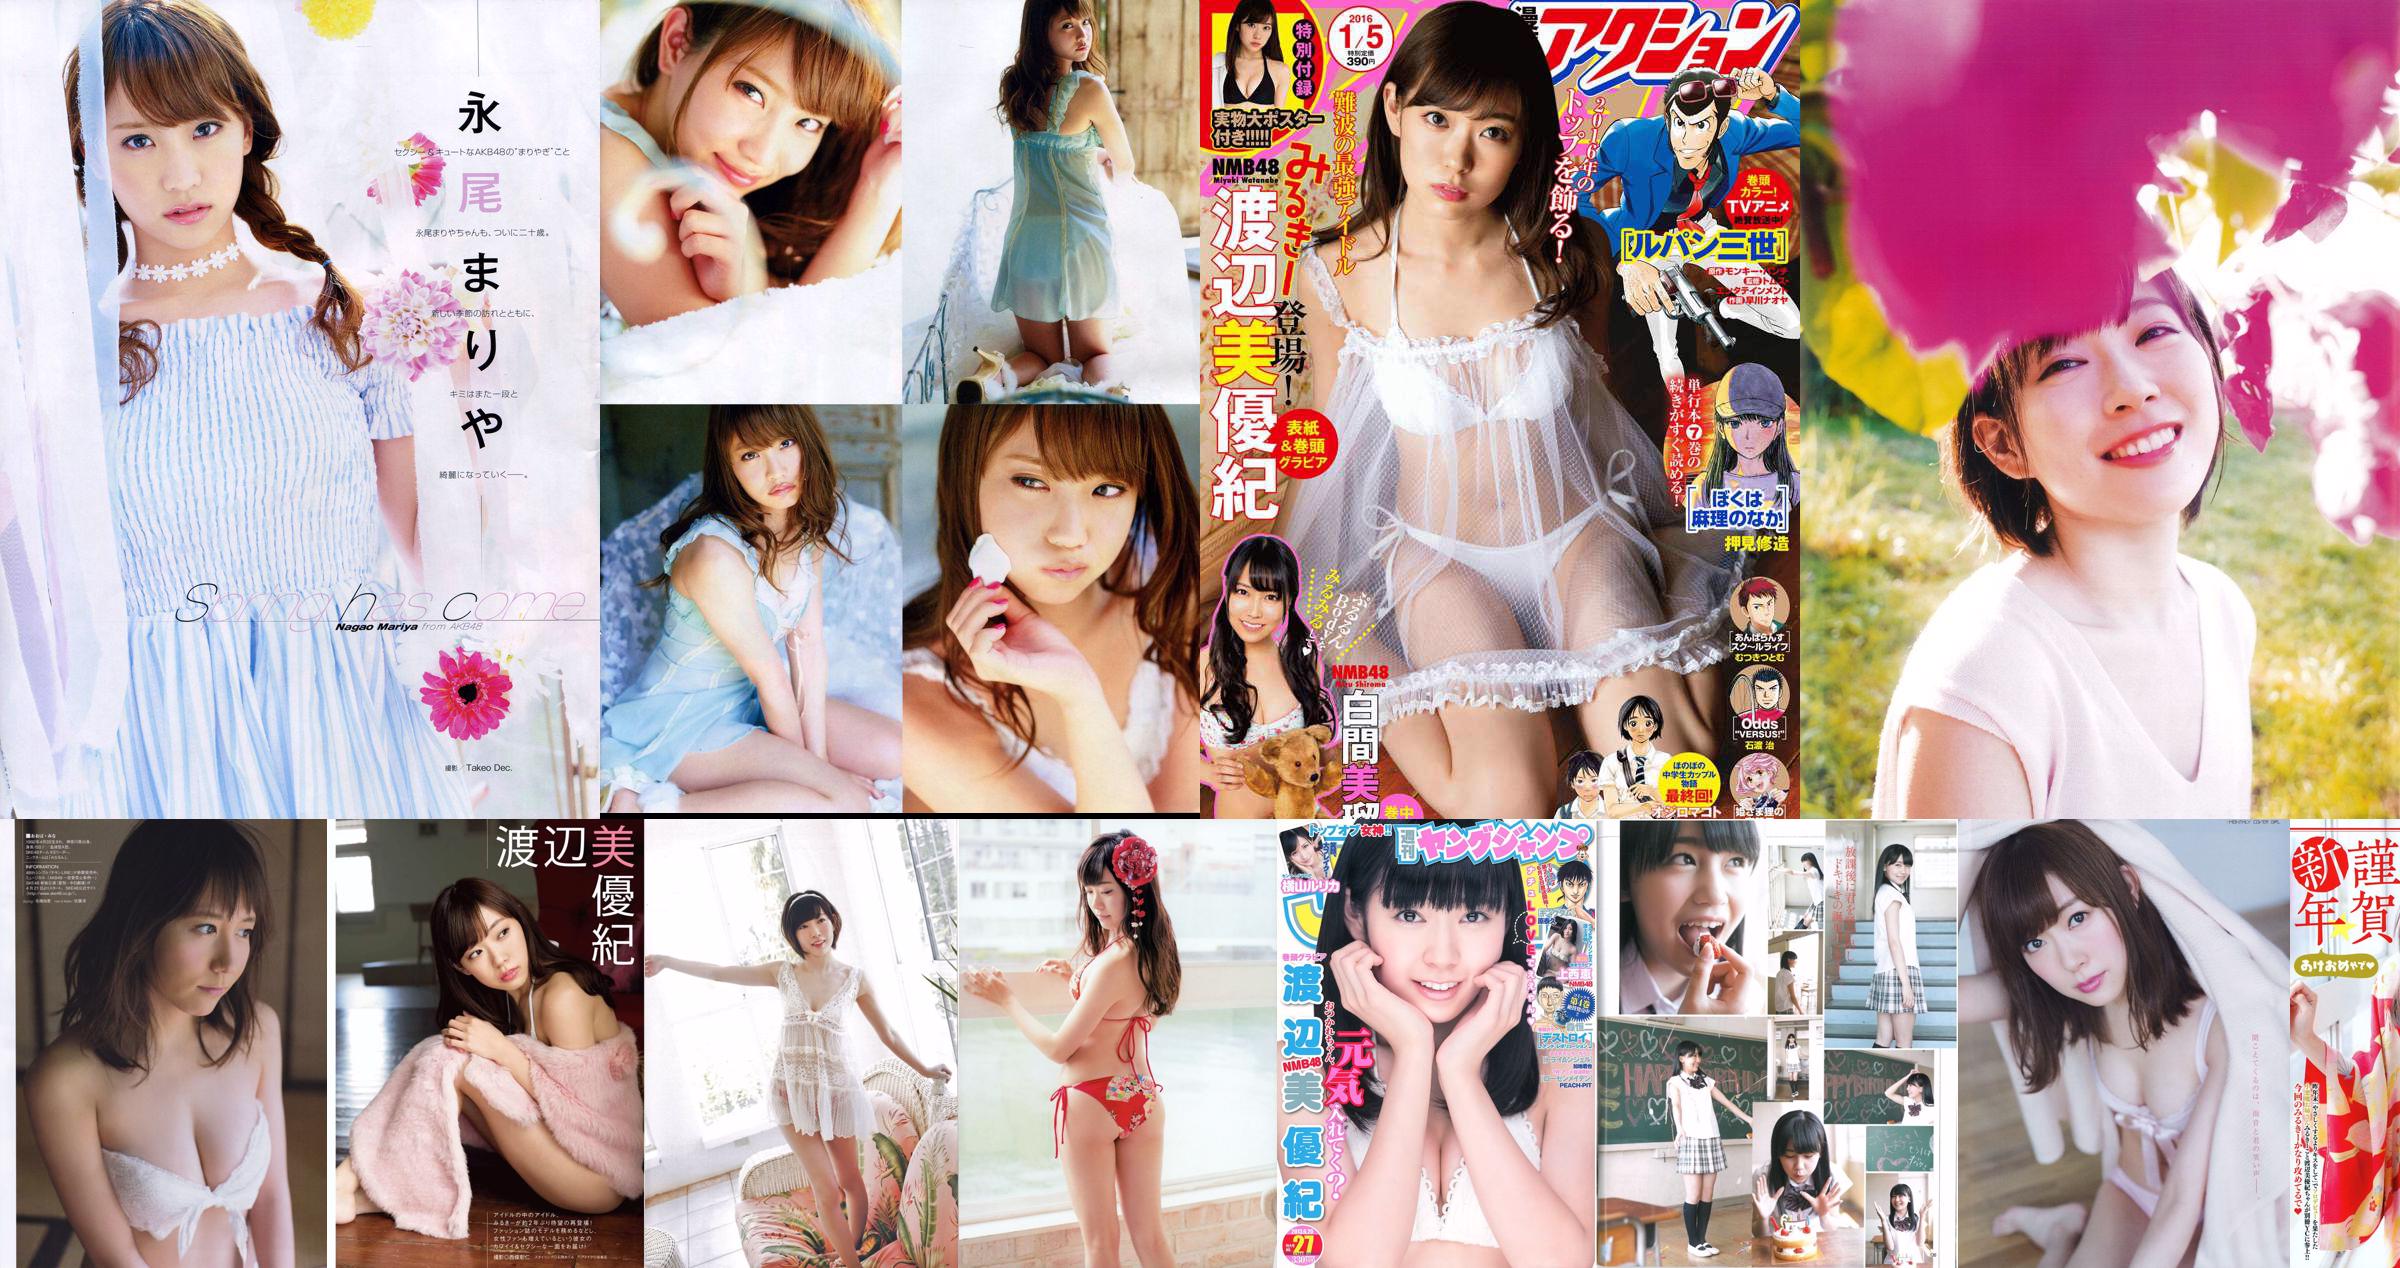 [Young Champion Extra] Miyuki Watanabe 2015 No.02 Photo Magazine No.0015c6 Page 1